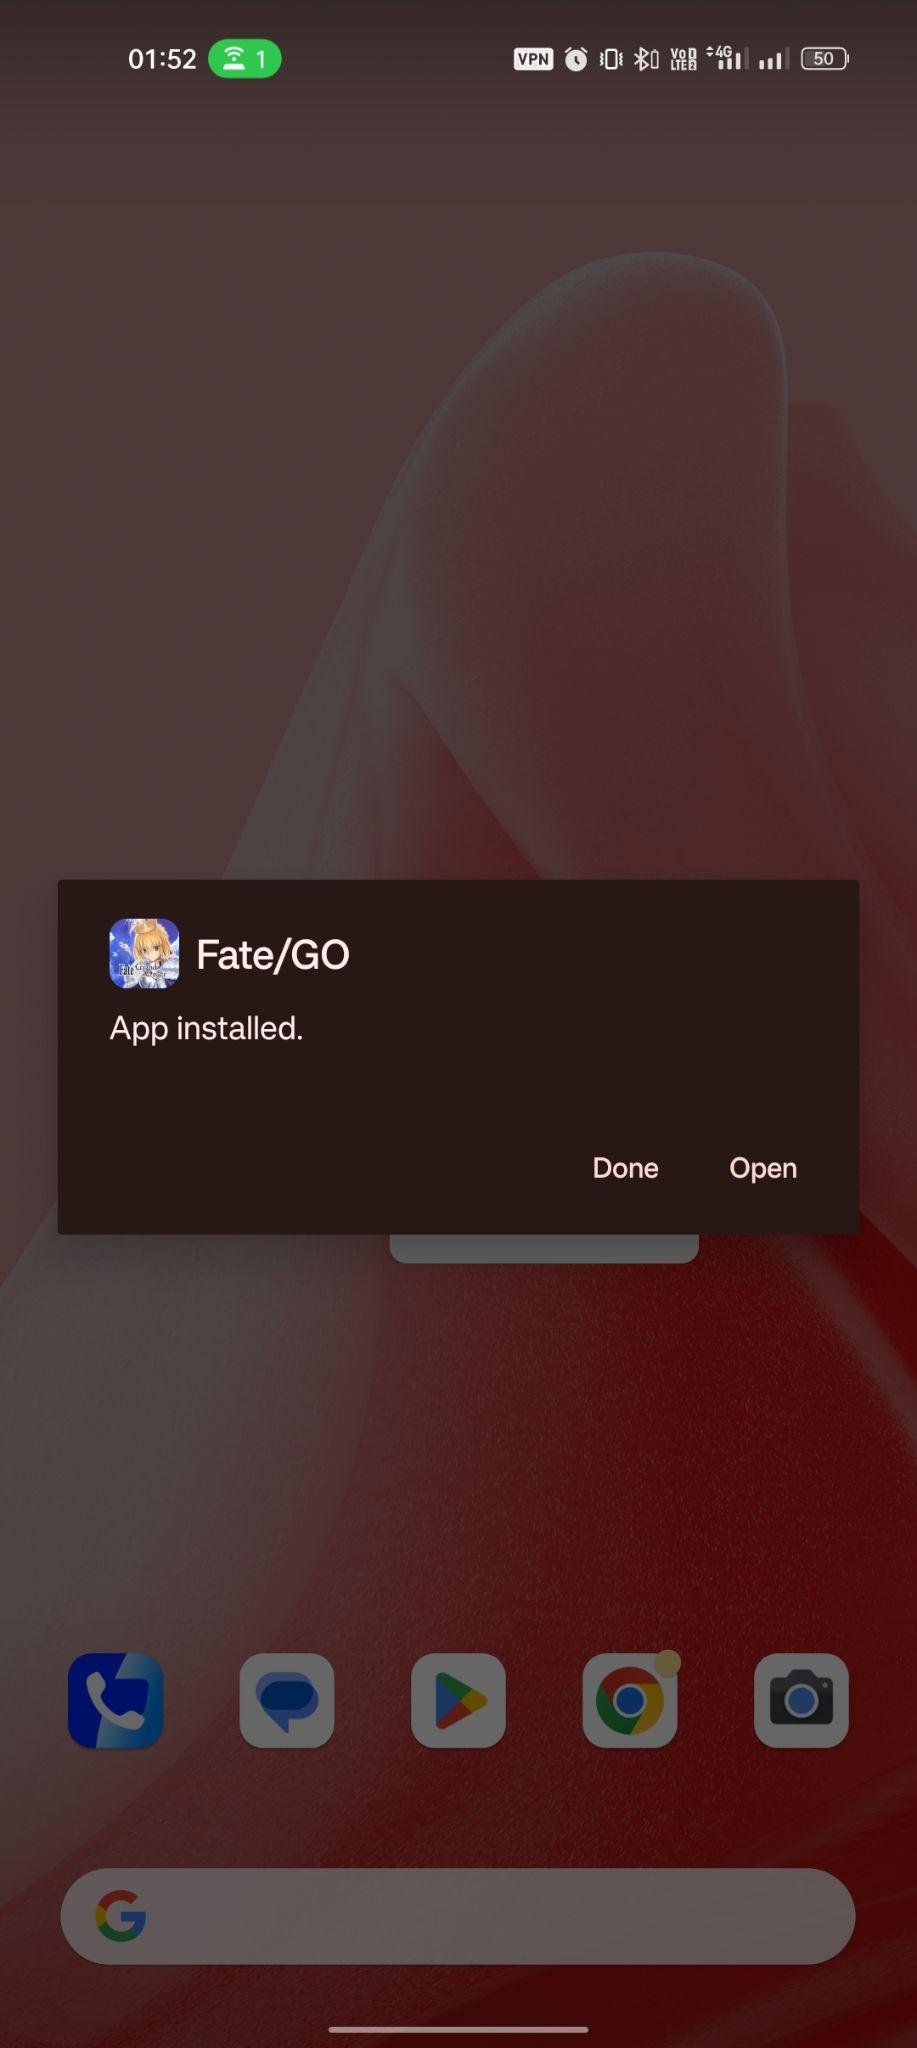 FGO JP apk installed